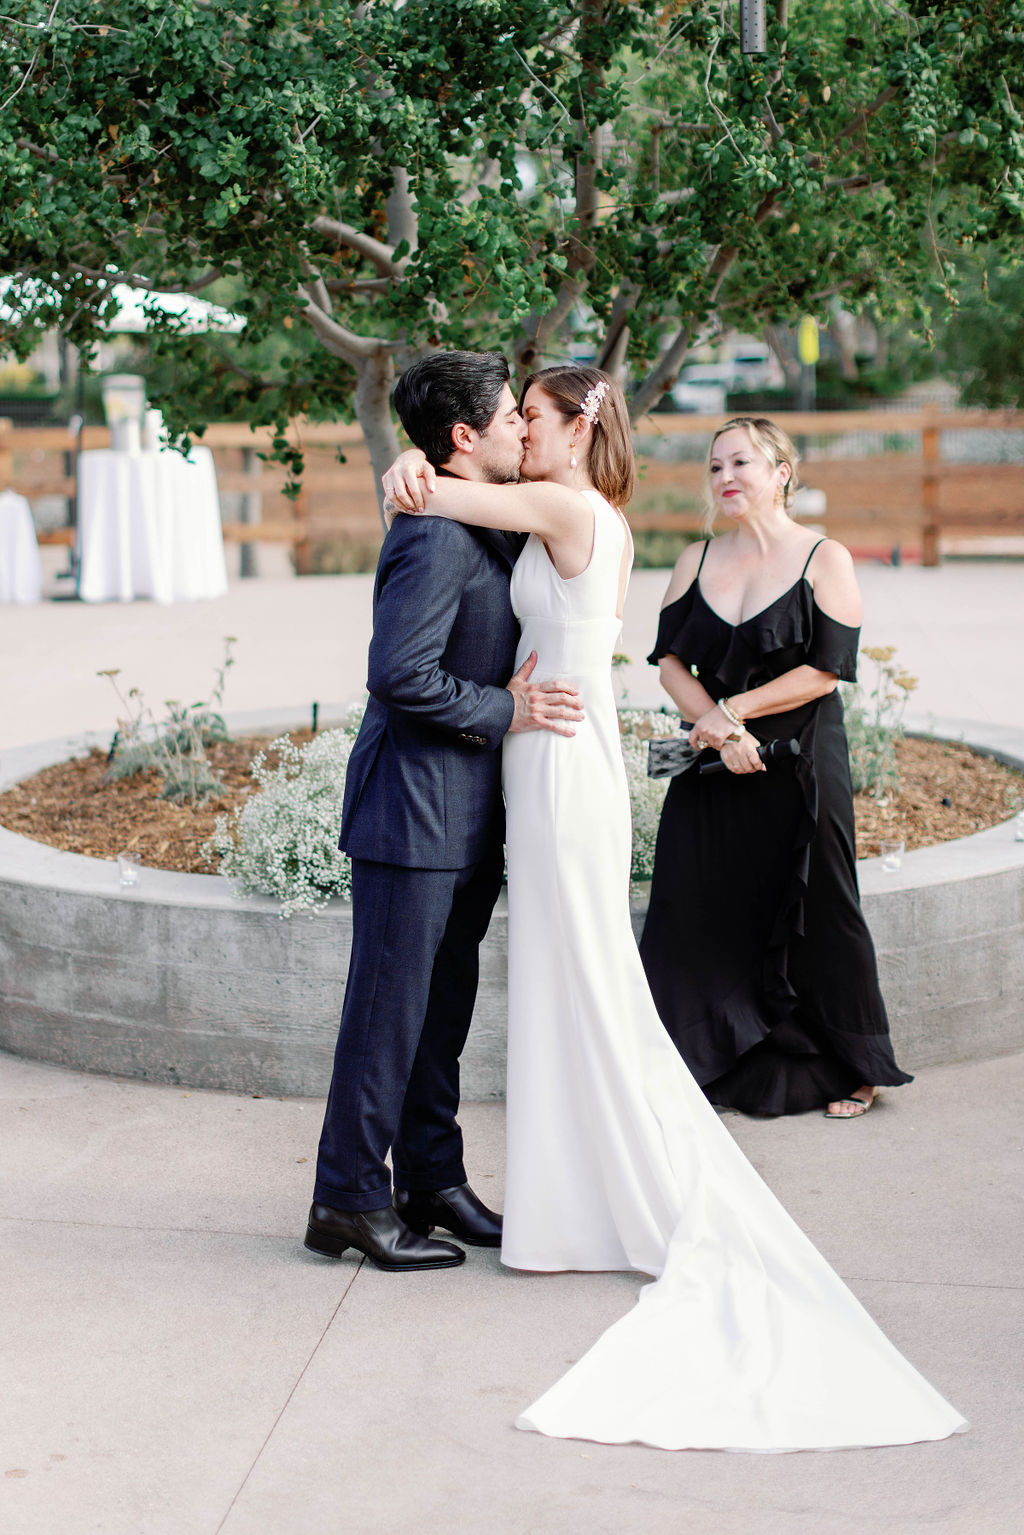 Wedding kiss photo at Aliso Viejo Ranch by Sarah Block Photography